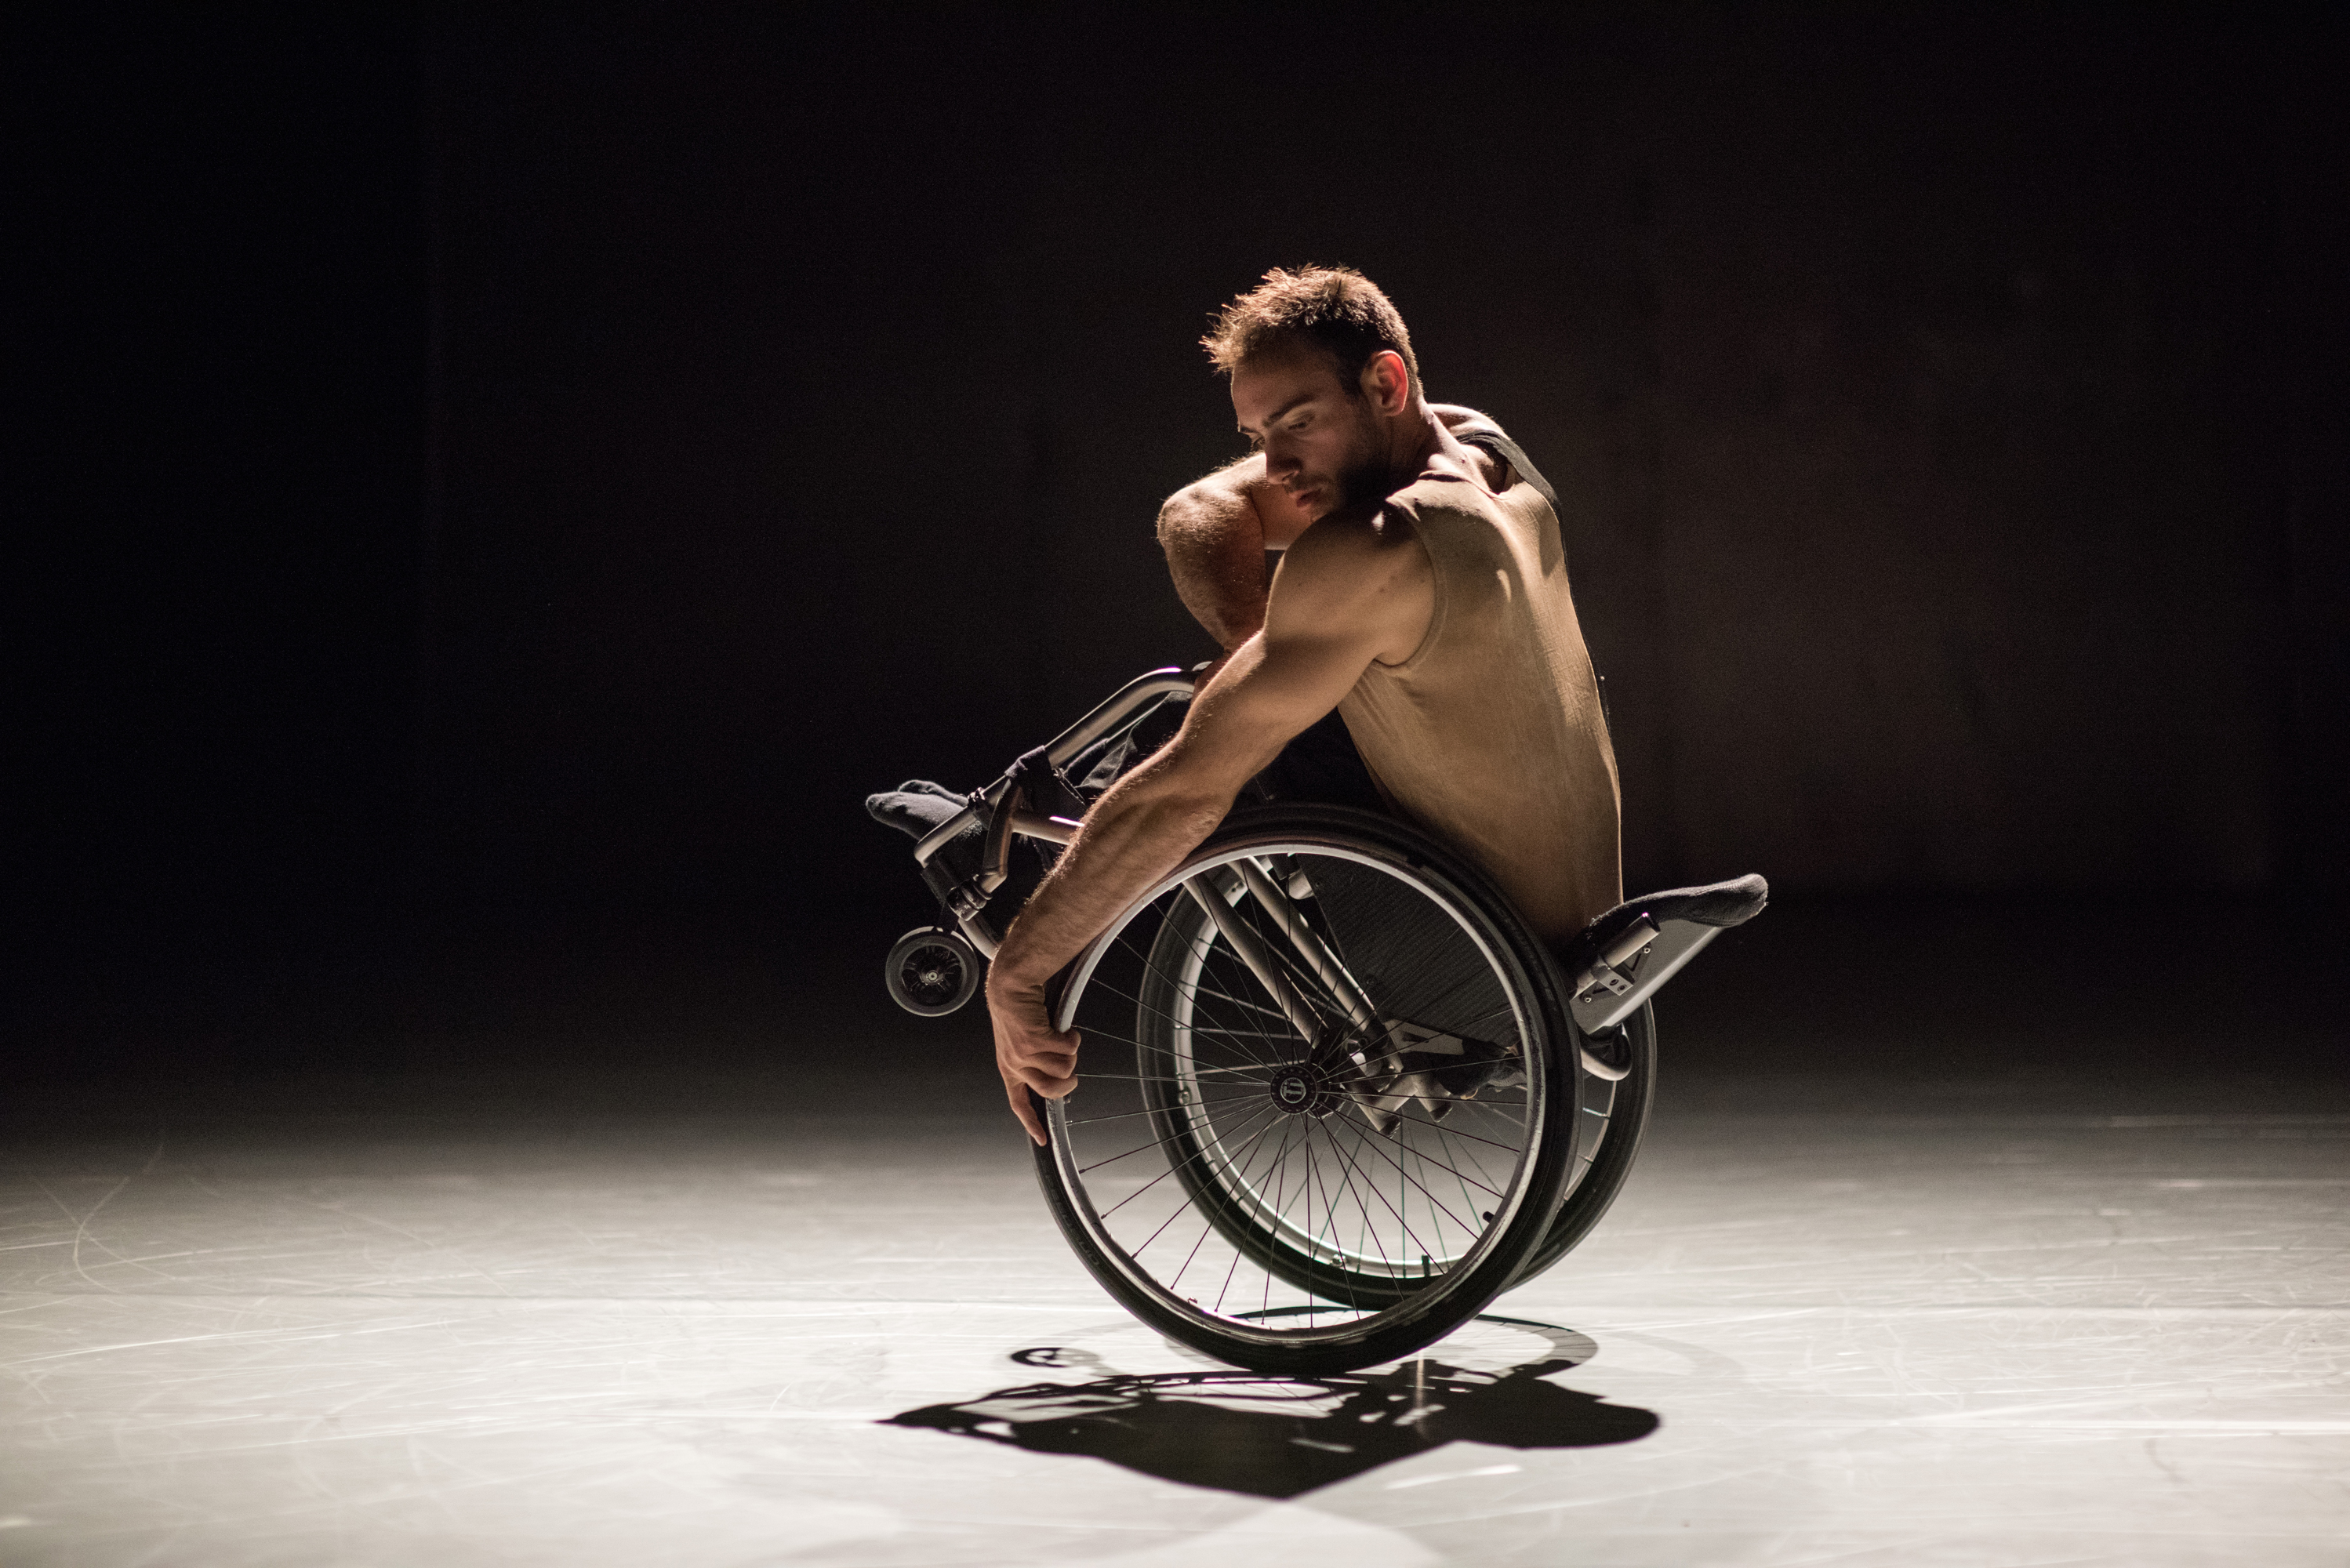 Dansaren Joel Brown på scen i verket "Beheld" av Alexander Whitley. Joel starka armar är framträdande och han tittar koncentrereat ner i scengolvet samtidigt som han balanserar bakåt med sin rullstol bakåt på sin rullstol.